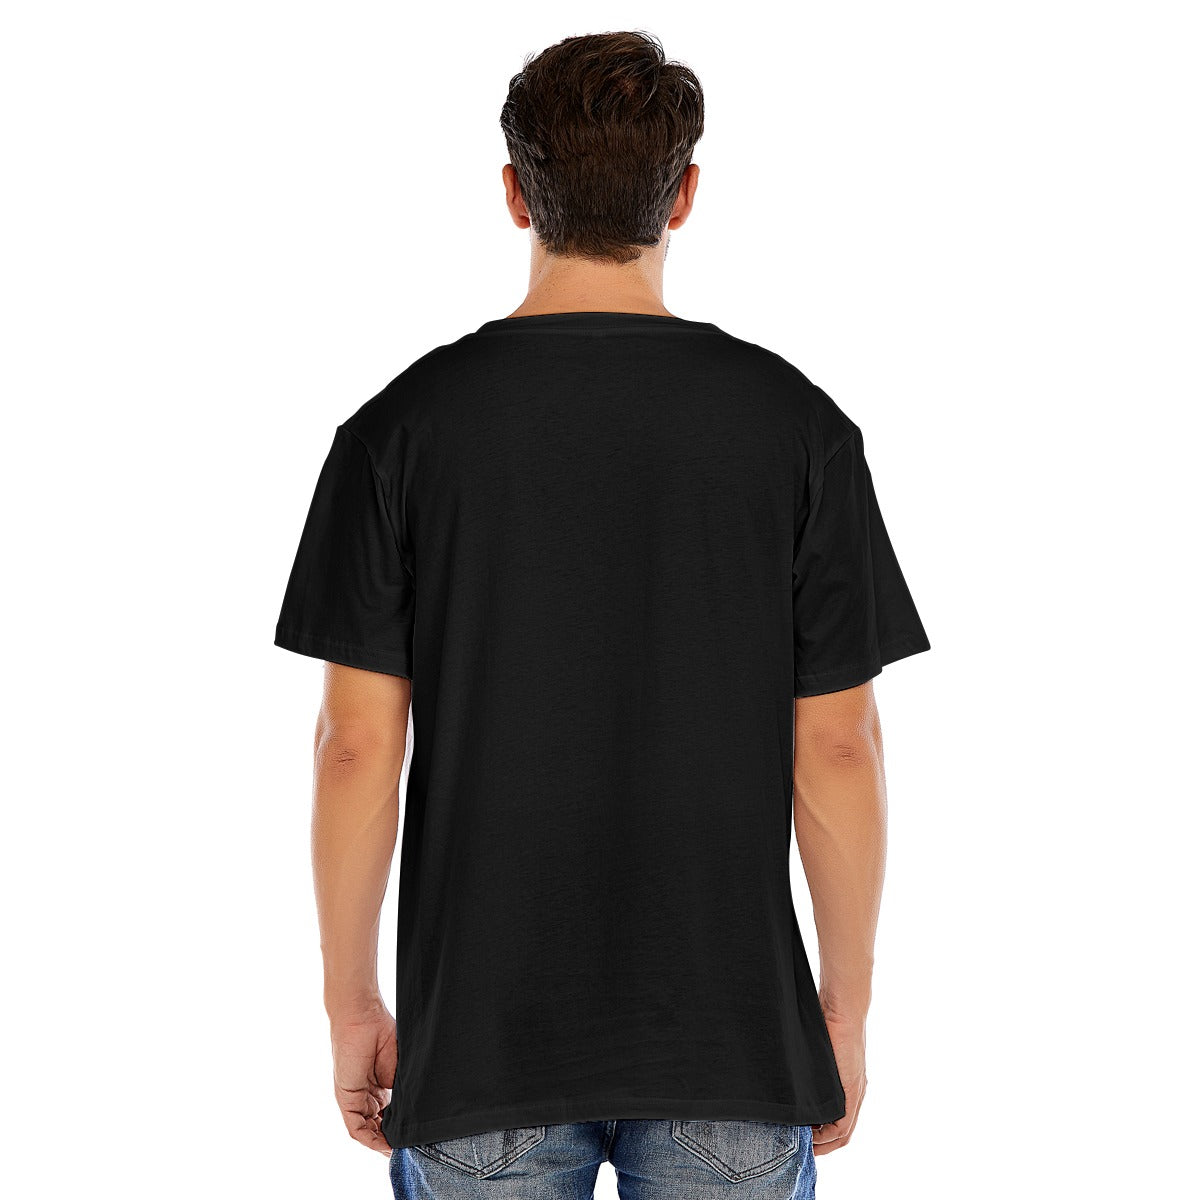 KERB LOGO Unisex Oversized Short Sleeve T-shirt